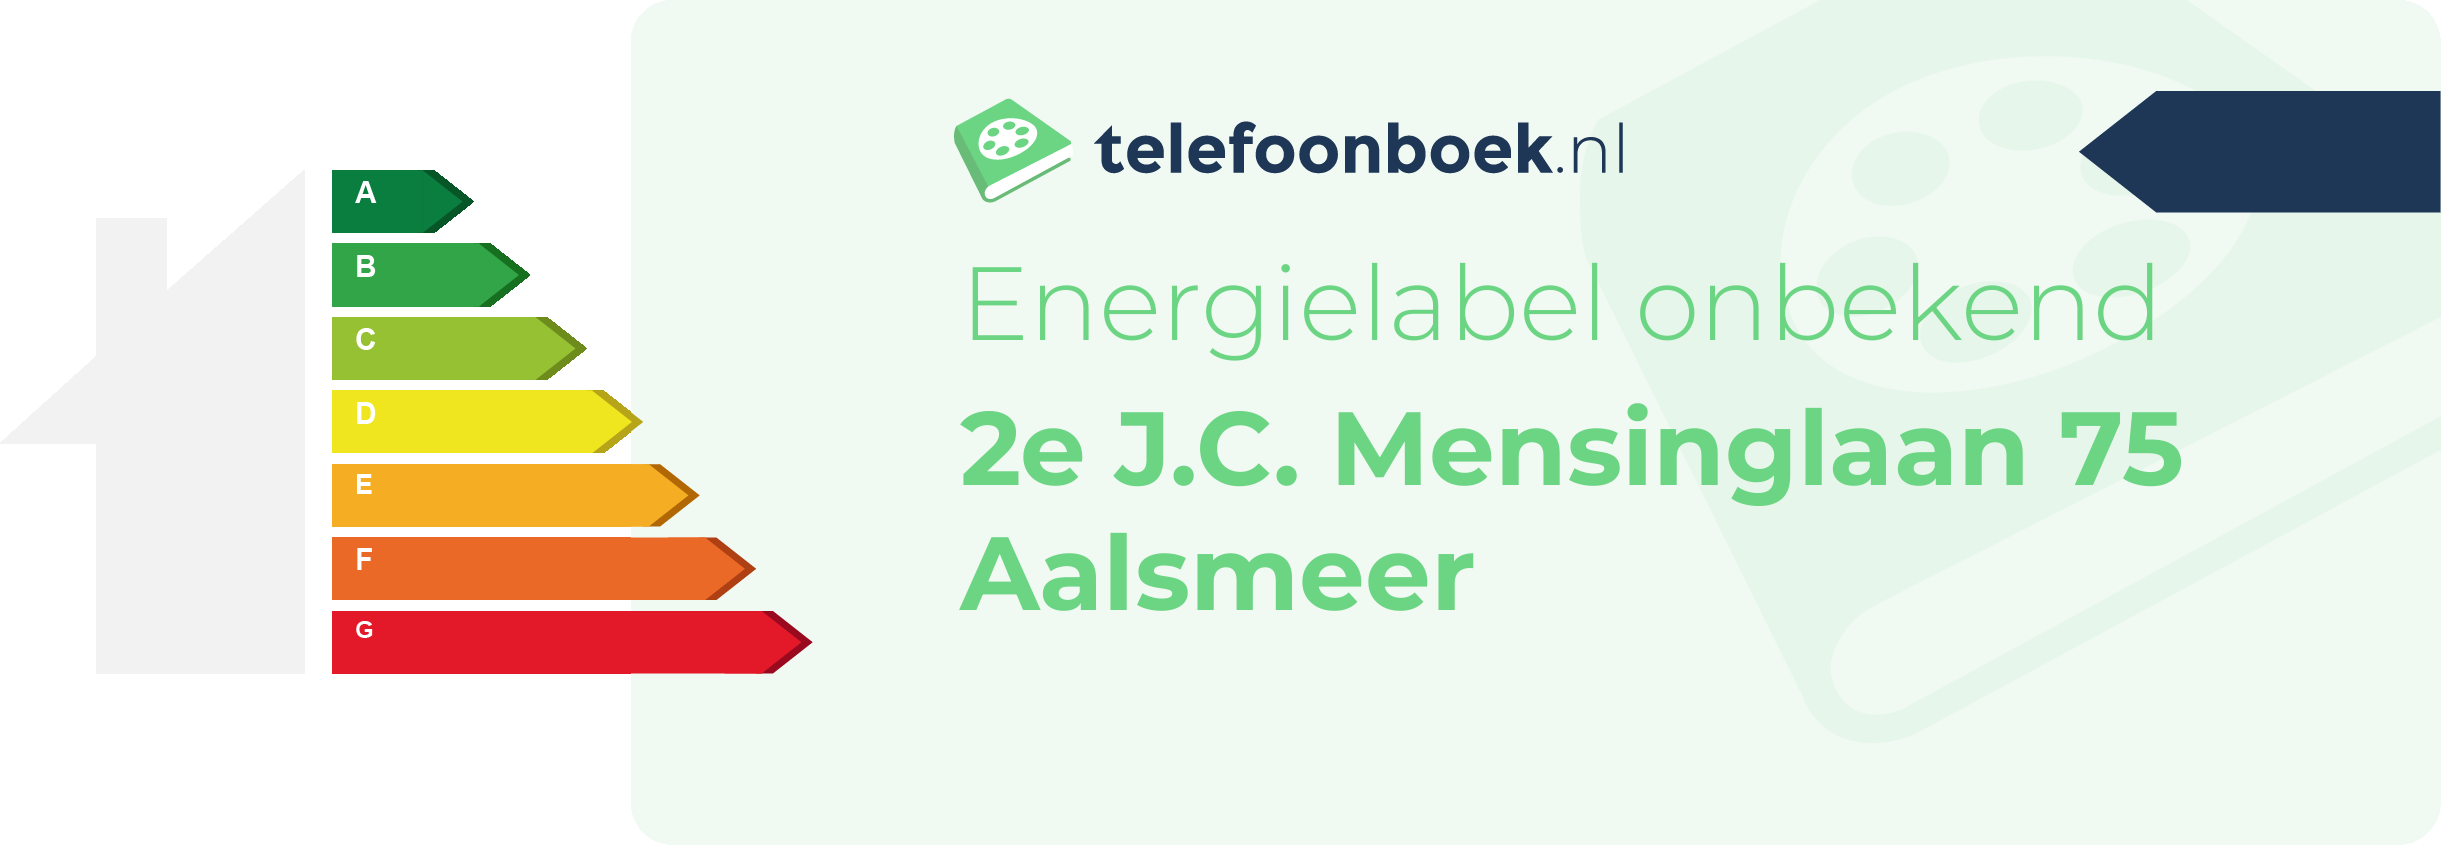 Energielabel 2e J.C. Mensinglaan 75 Aalsmeer